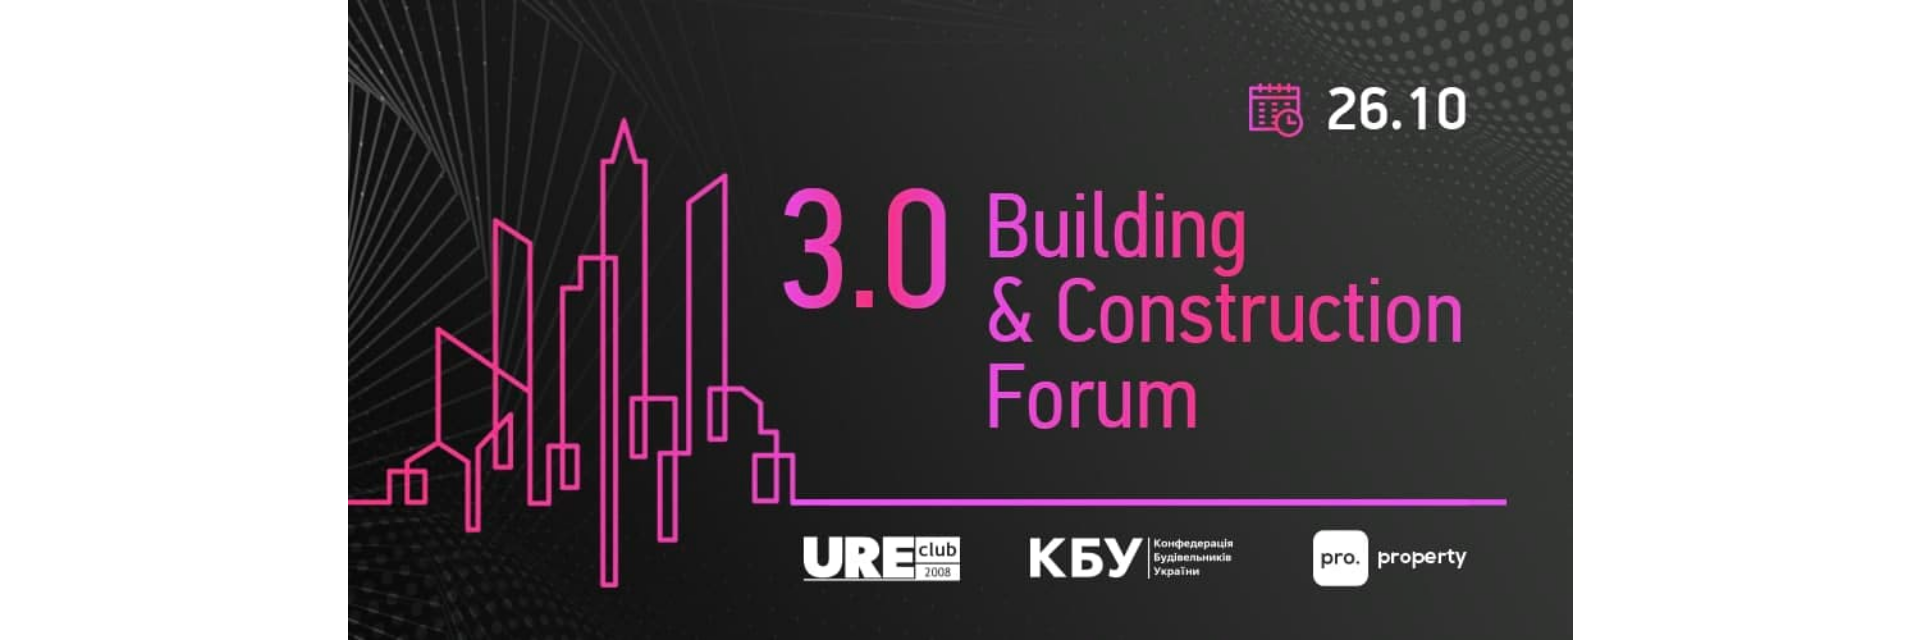 Building & Construction Forum 3.0